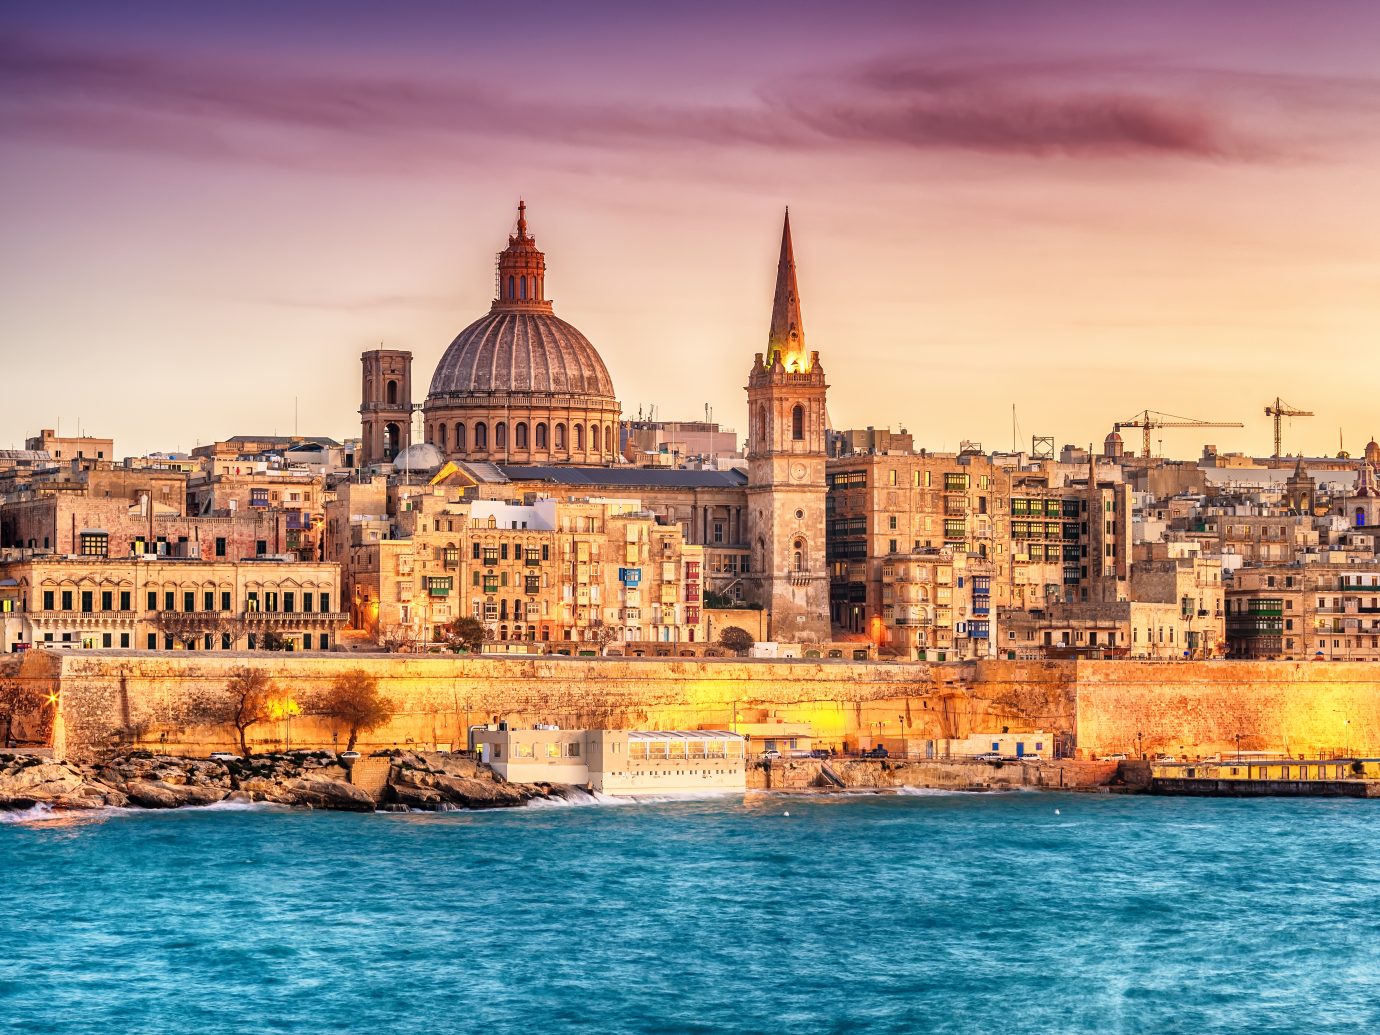 skyline of Valletta, Malta